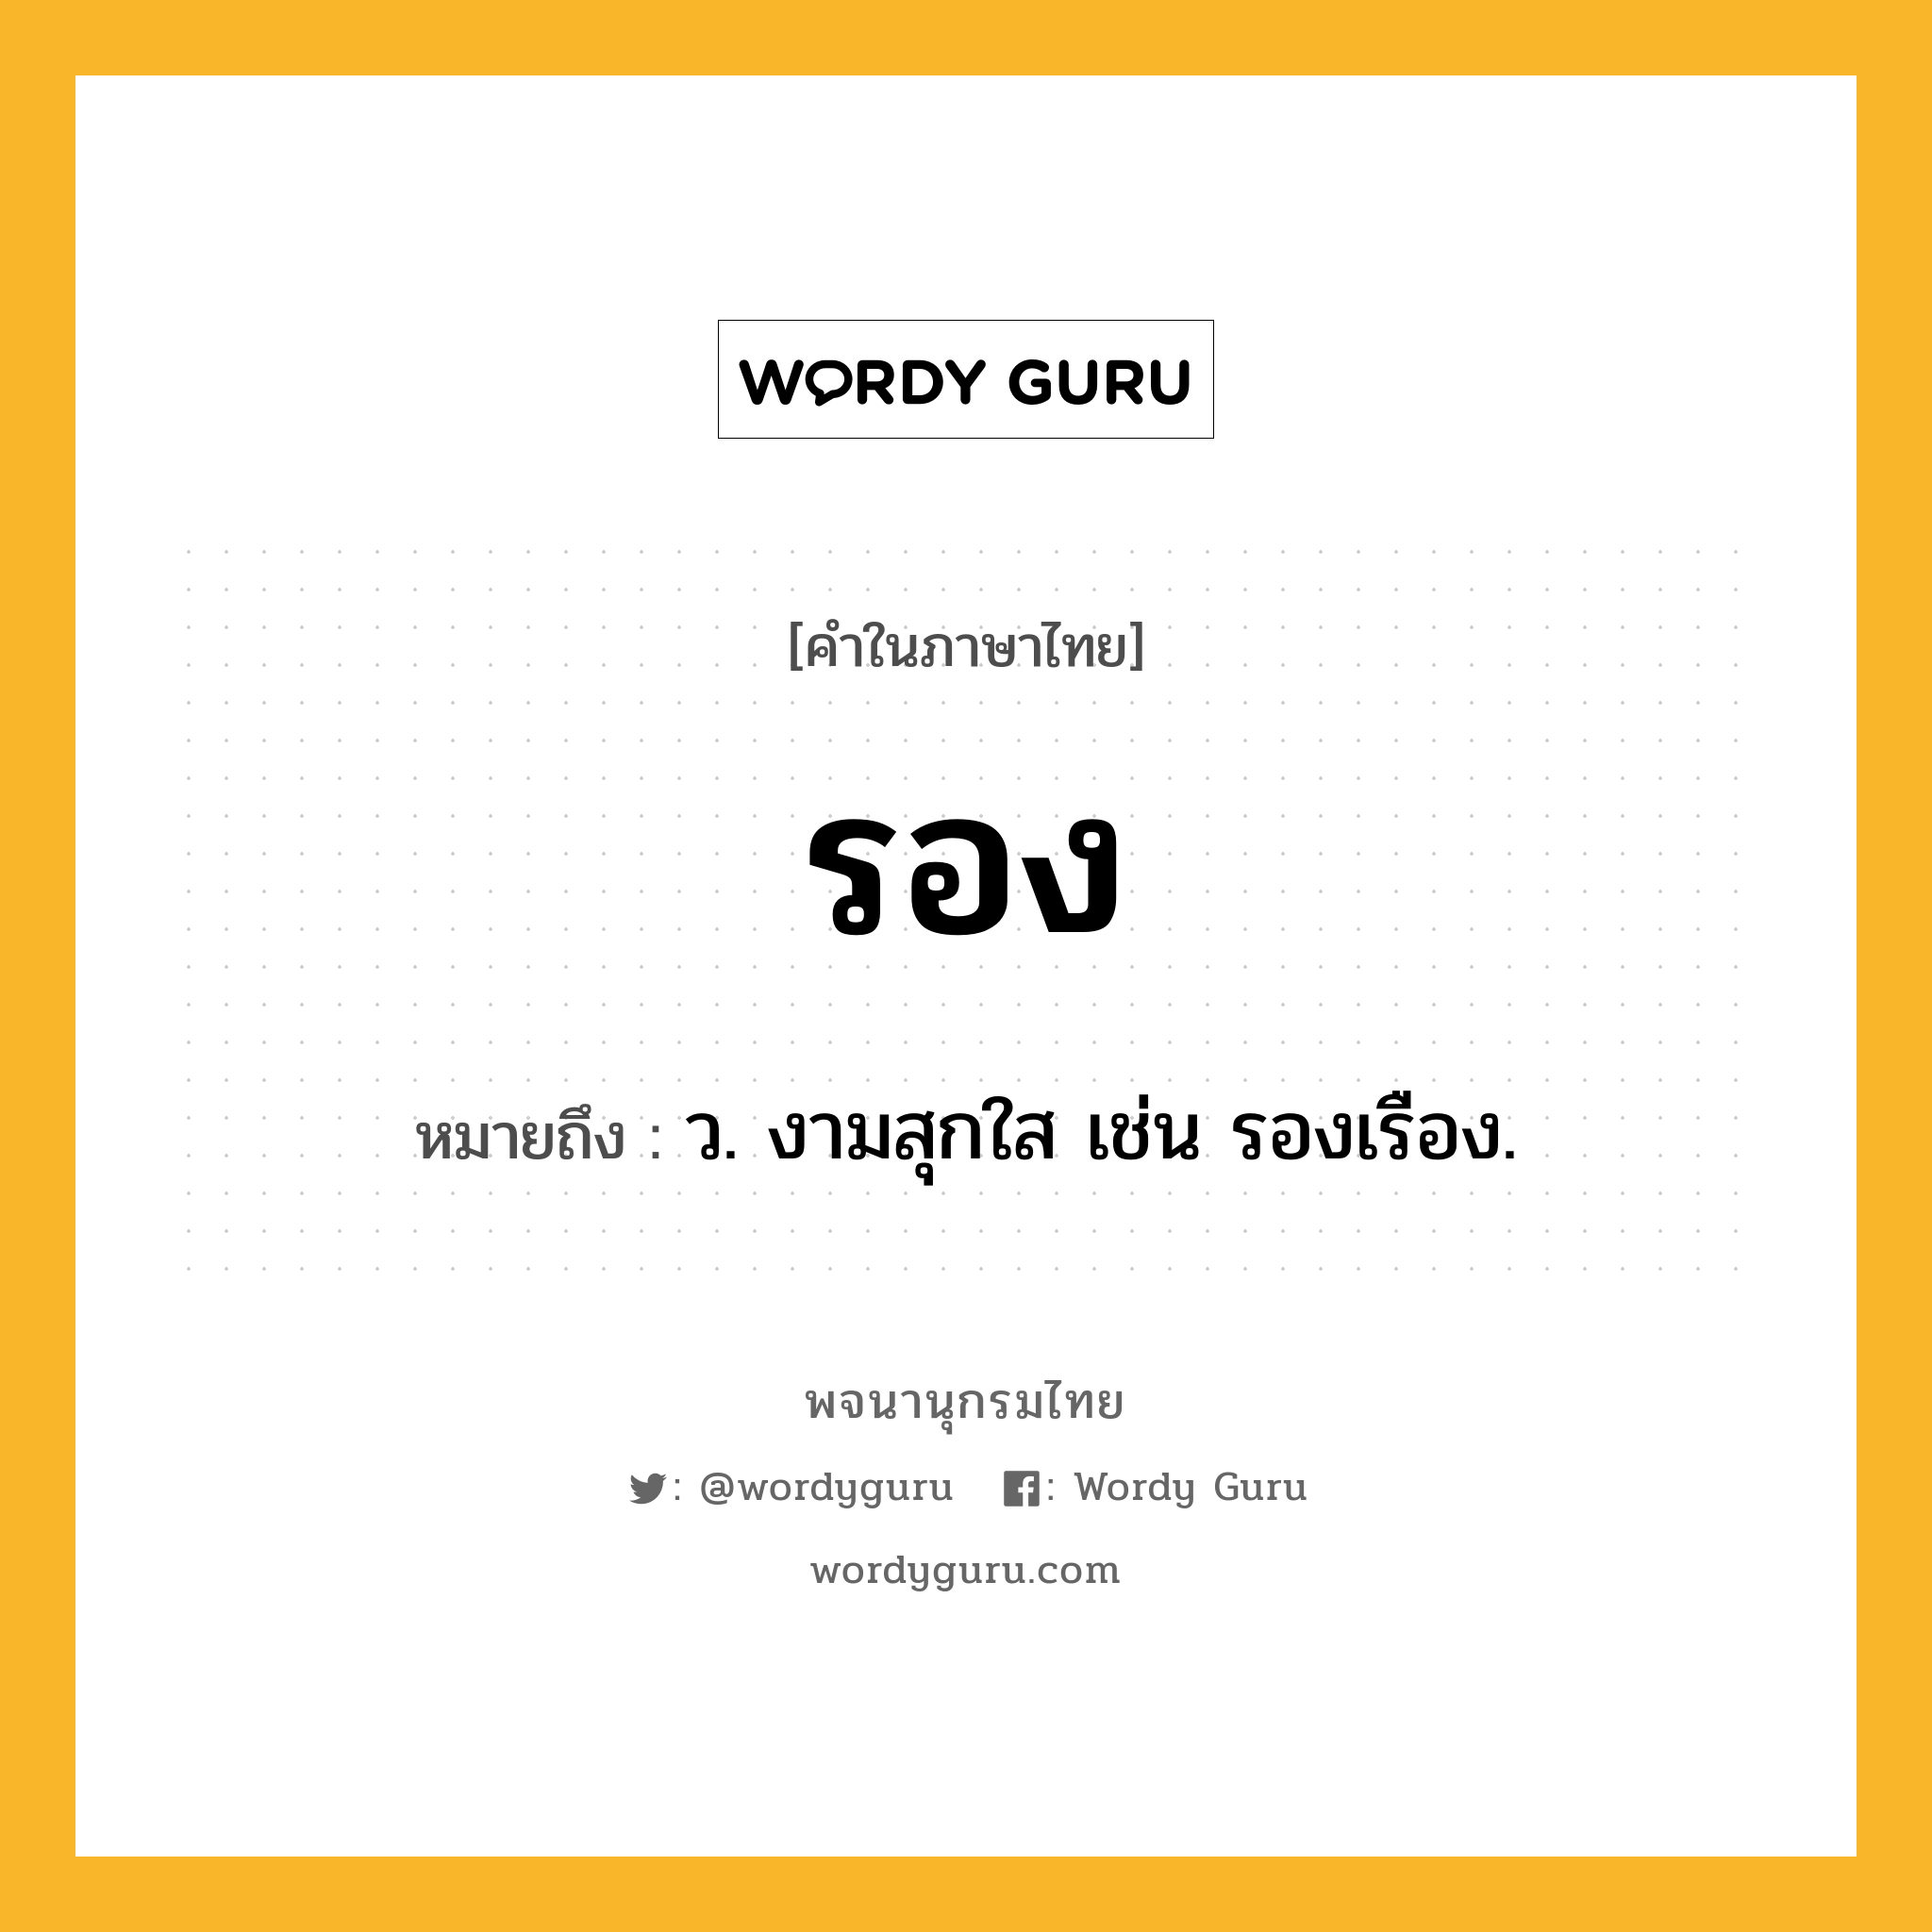 รอง ความหมาย หมายถึงอะไร?, คำในภาษาไทย รอง หมายถึง ว. งามสุกใส เช่น รองเรือง.